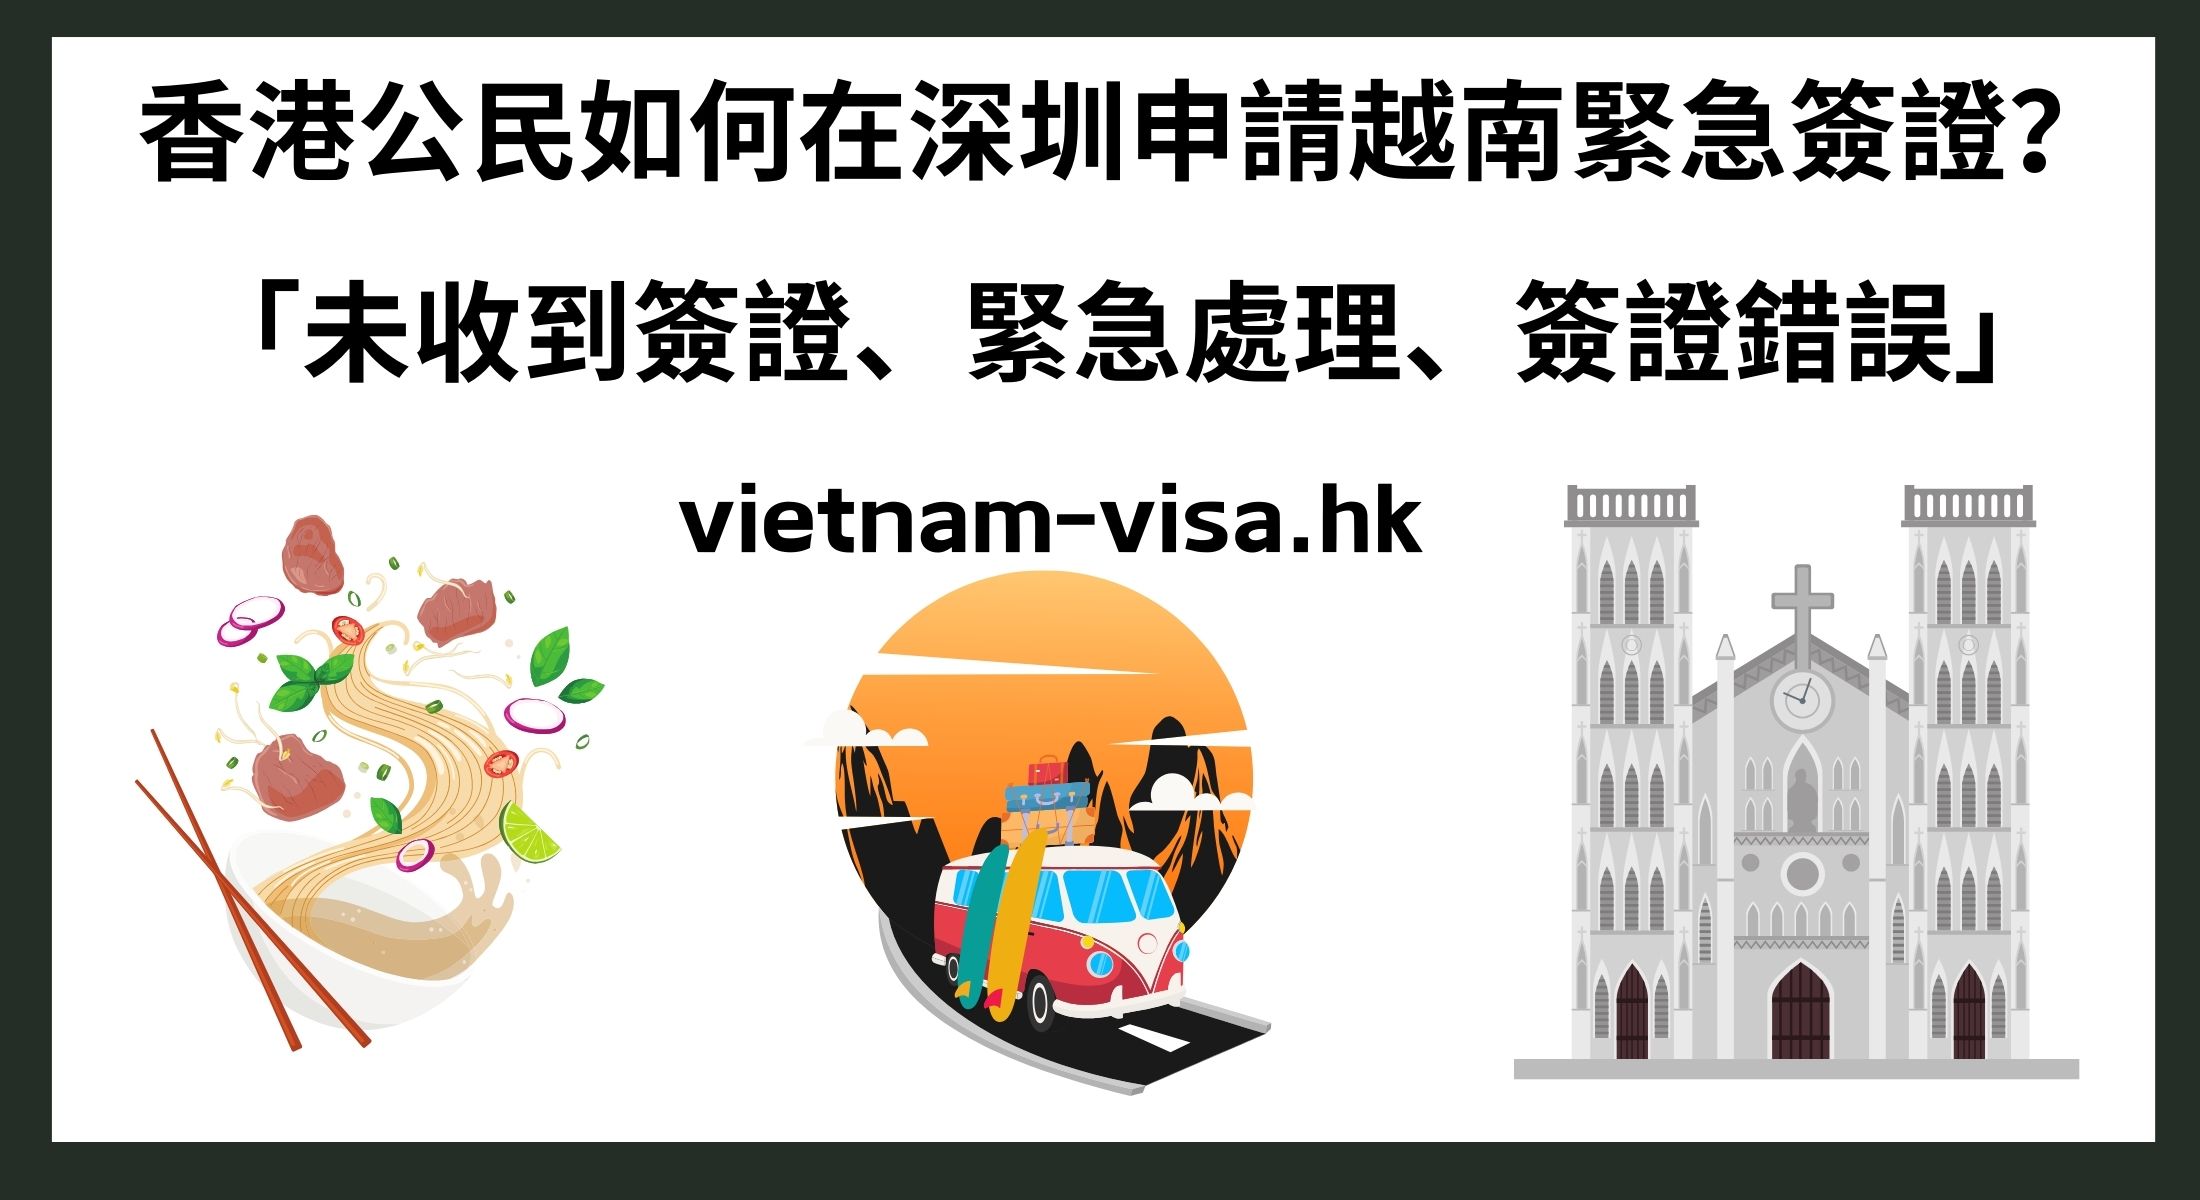 香港公民如何在深圳申請越南緊急簽證？ 「未收到簽證、緊急處理、簽證錯誤」